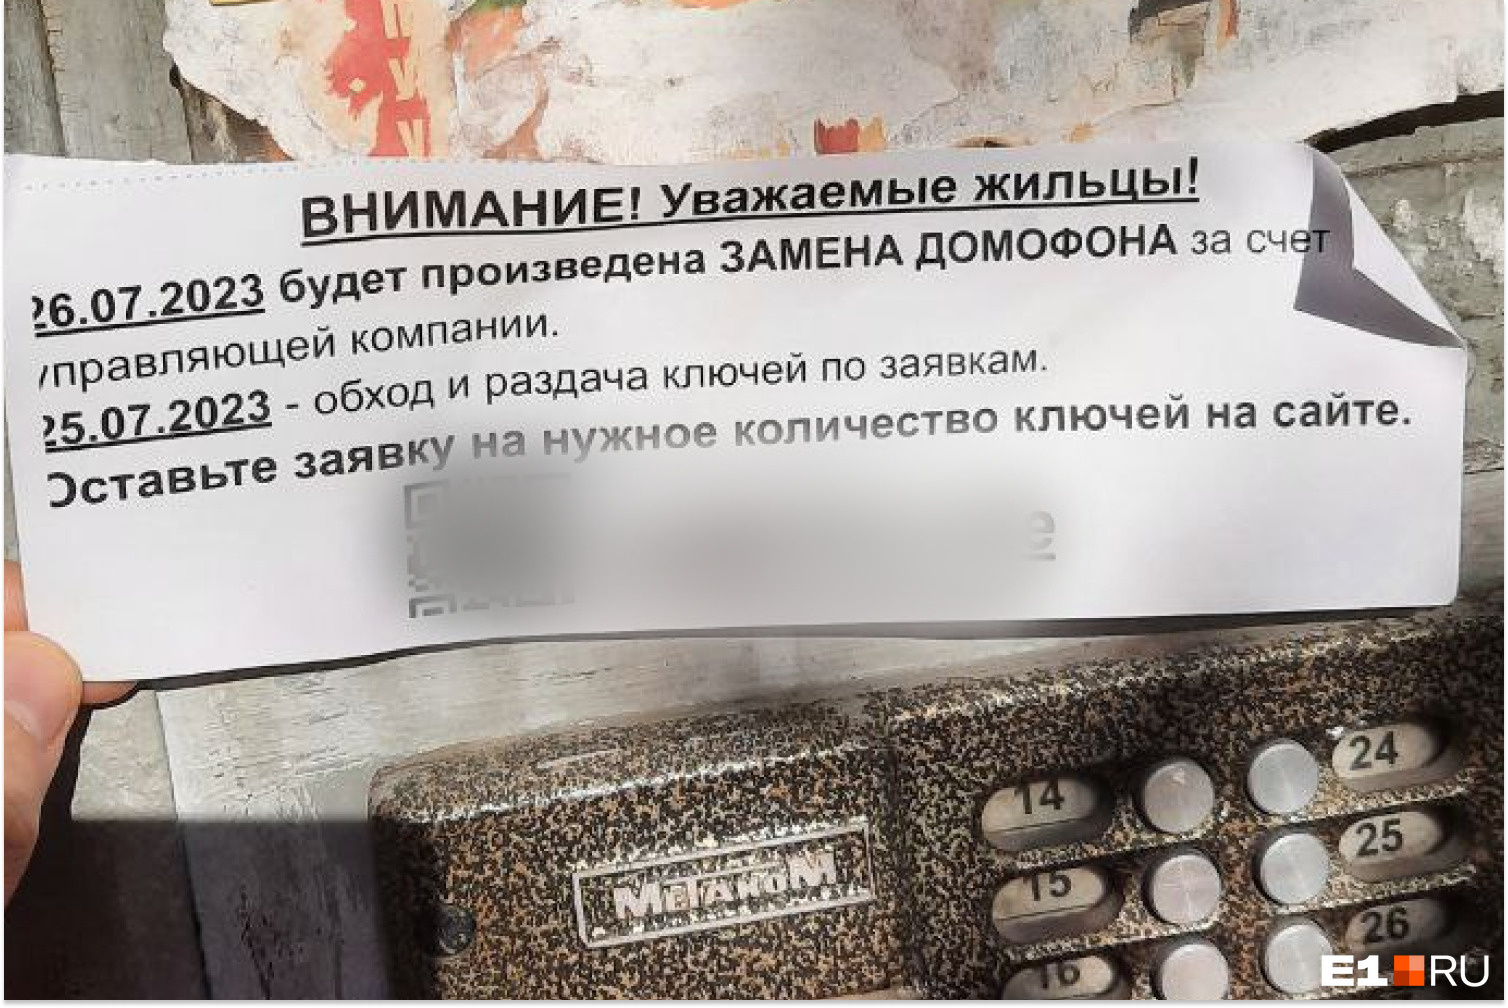 В Екатеринбурге мошенники придумали хитрую схему обмана, связанную с домофонами. Как не попасться?